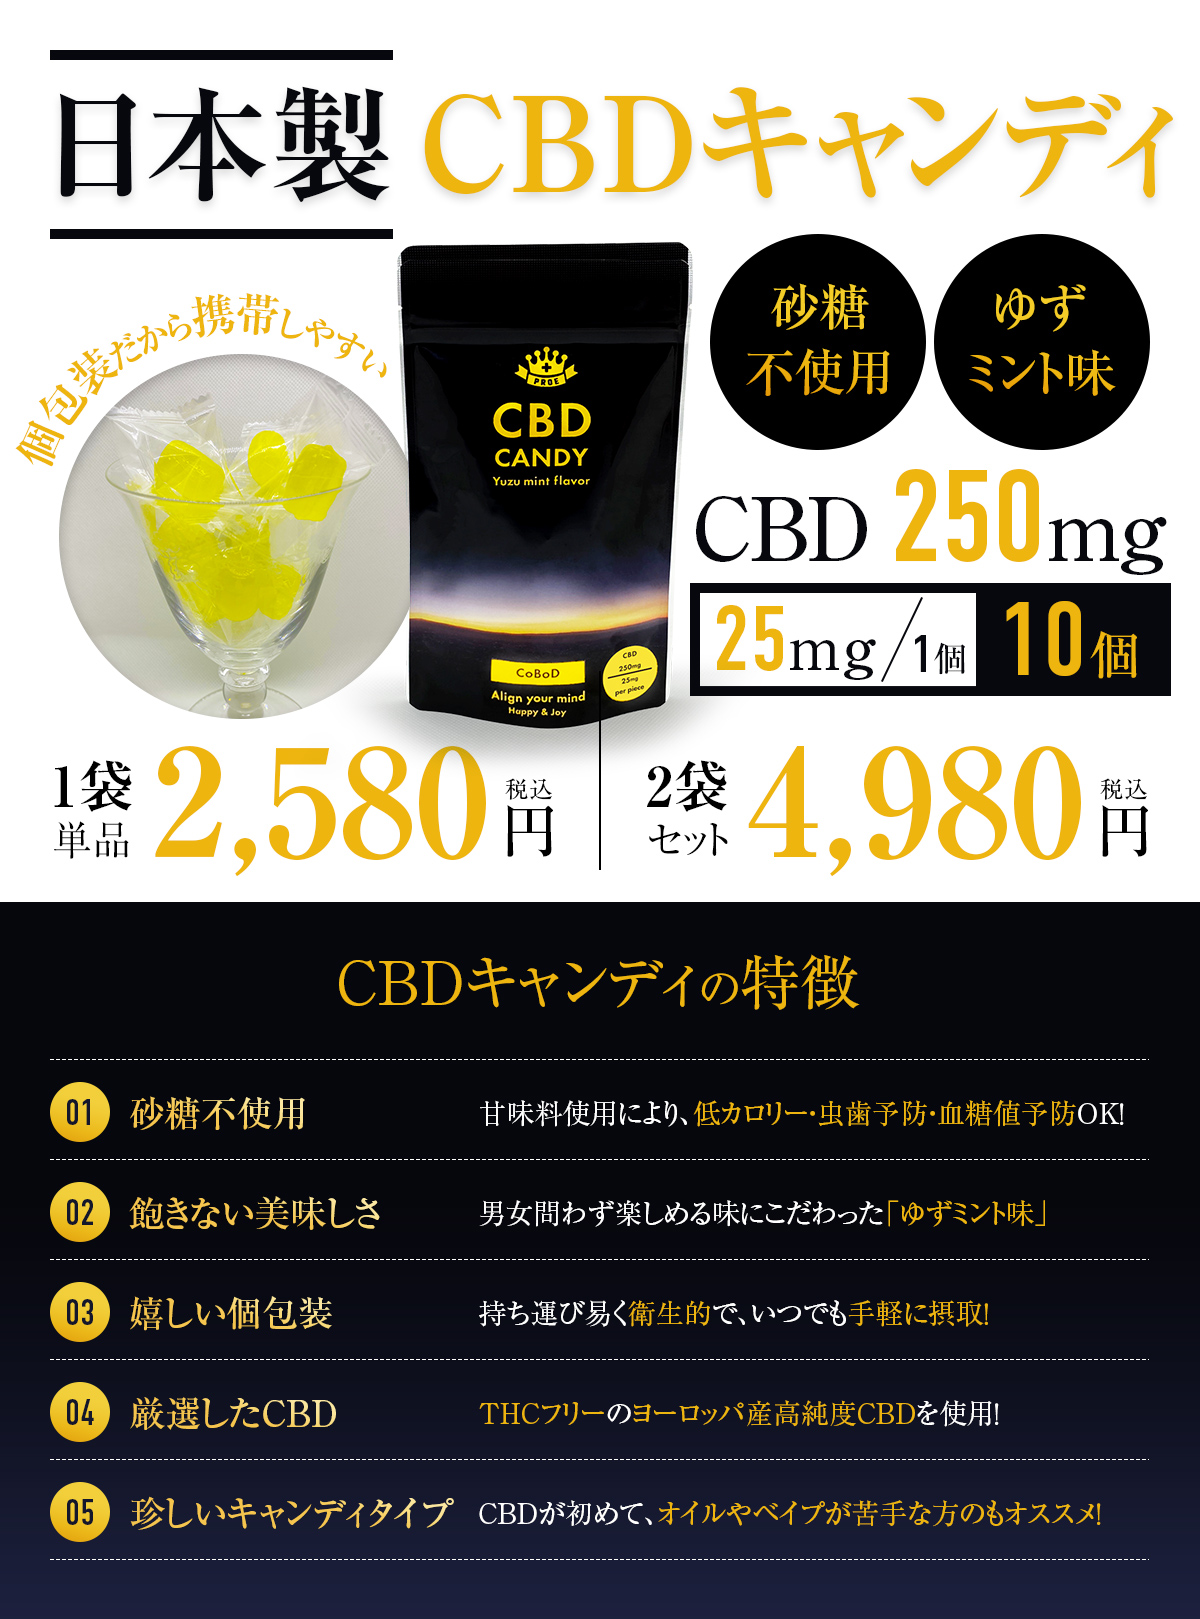 CBD キャンディ CBDグミではなく珍しい日本製キャンディ CBD 飴 cbdグミ オイル 高濃度 美容 ダイエット 効果 おすすめ 1粒25mg  10粒入り 250mg/袋 :c1:スッキリ快適サポート PROE 通販 